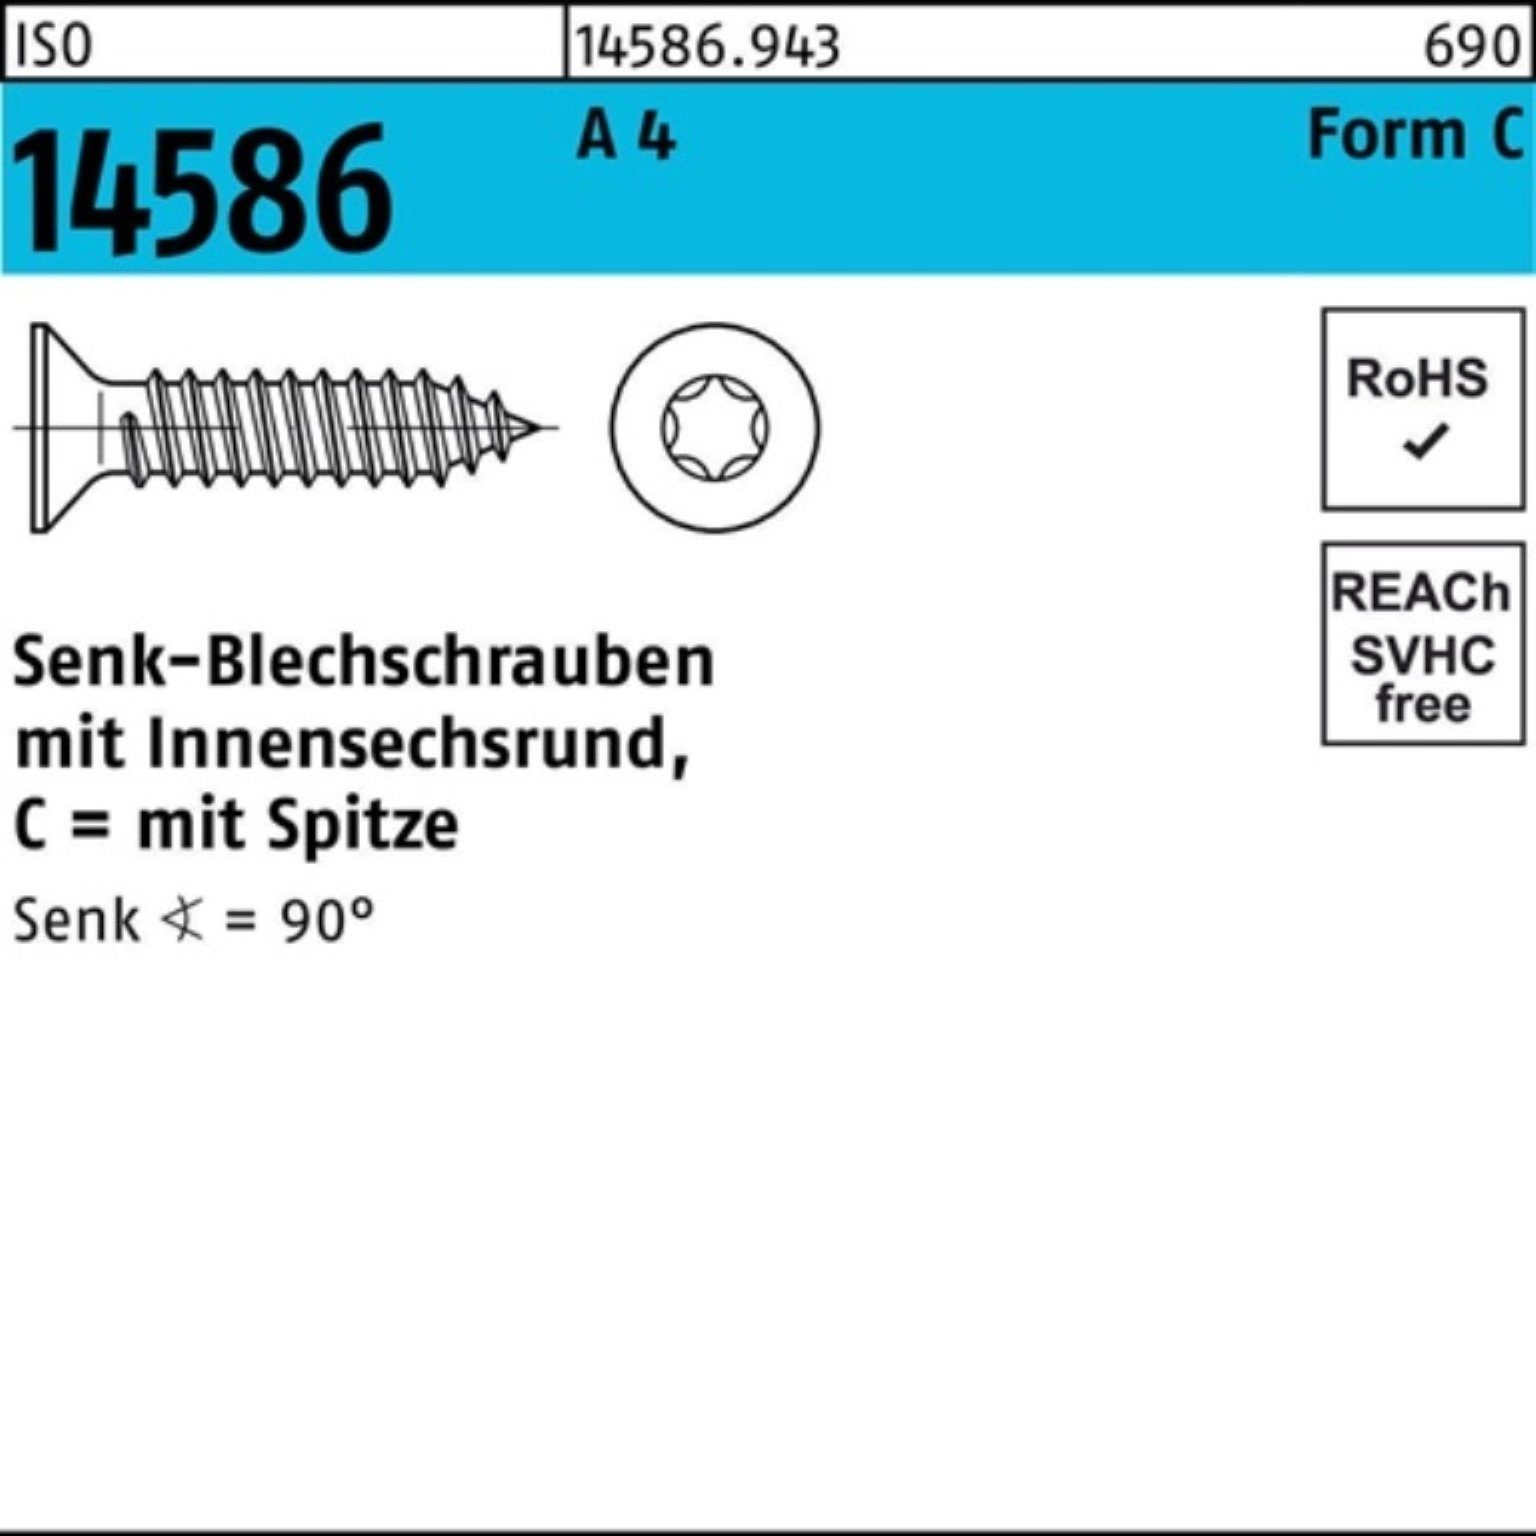 Reyher Schraube 250er Pack Senkblechschraube ISO 14586 ISR/Spitze 5,5x 70-T25 A 4 250